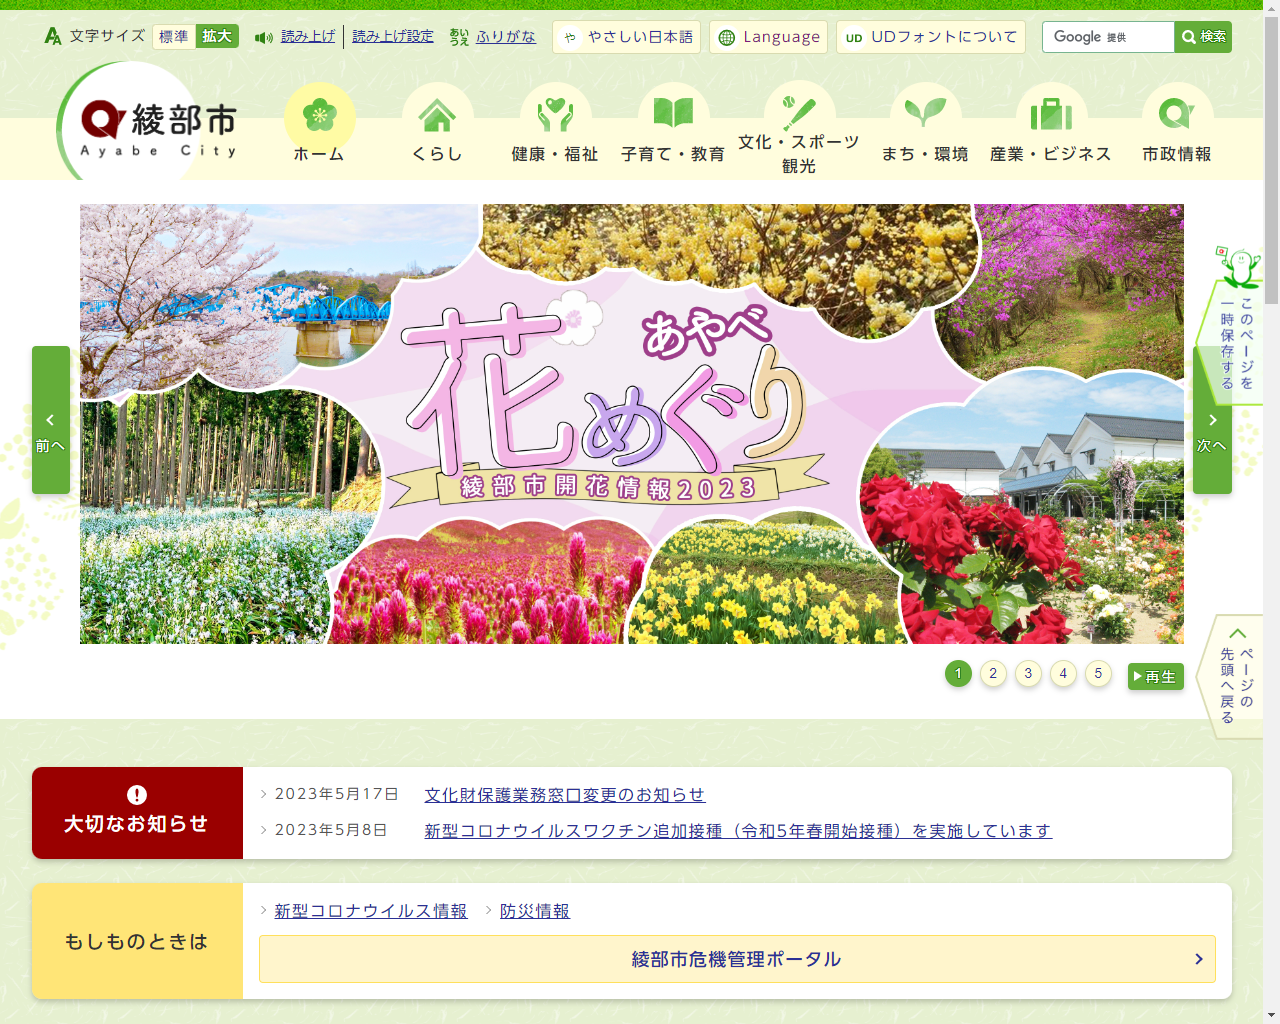 綾部市公式ホームページのイメージ画像